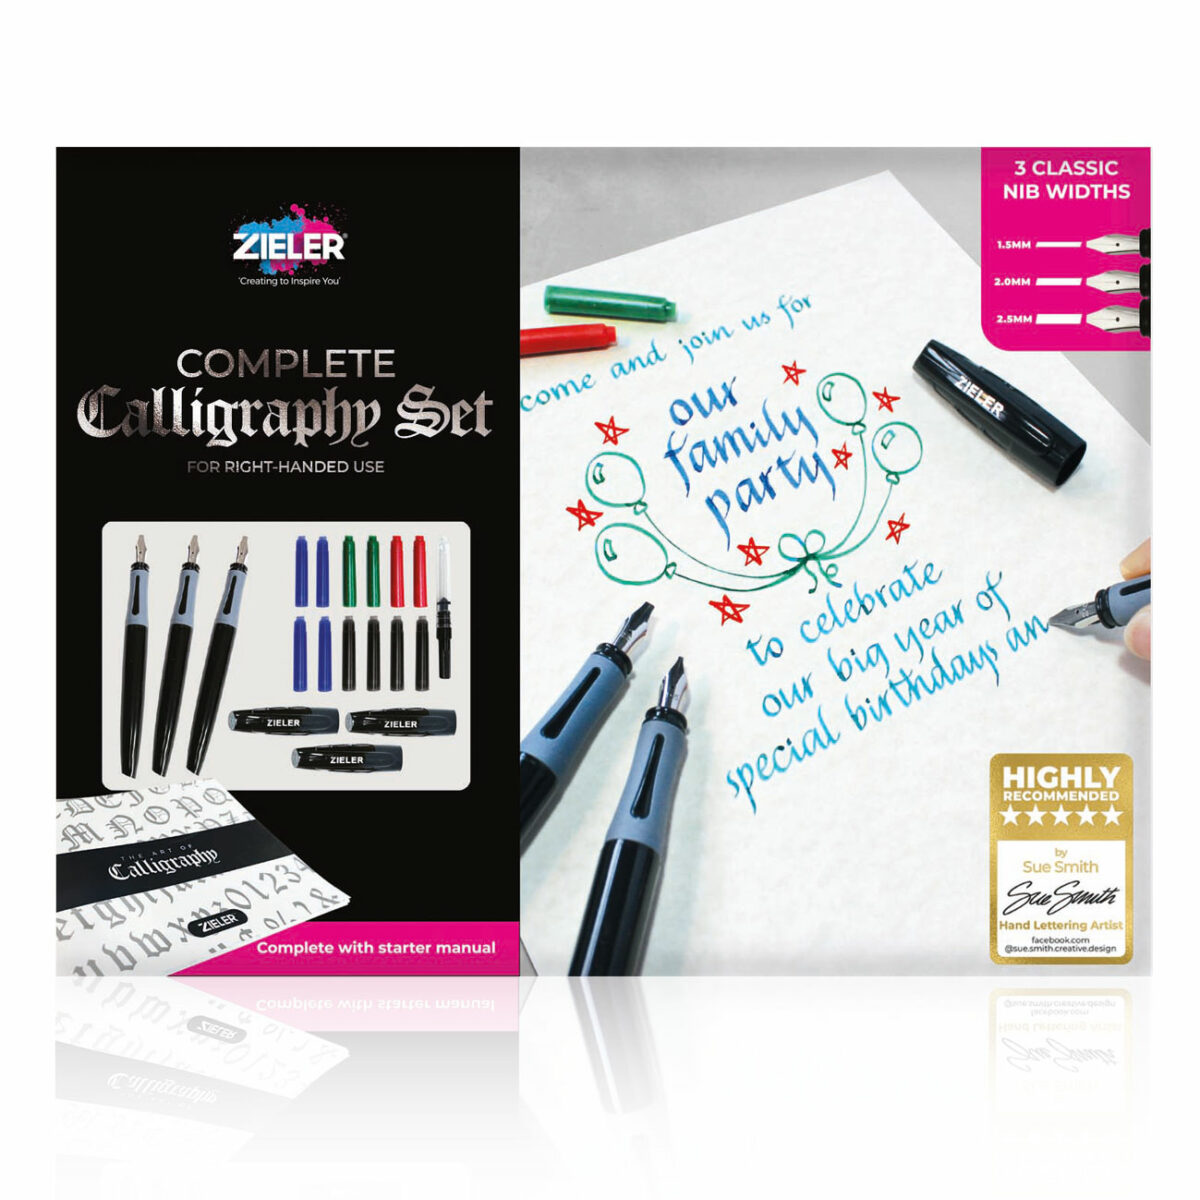 Complete Calligraphy Set - Zieler Art Supplies